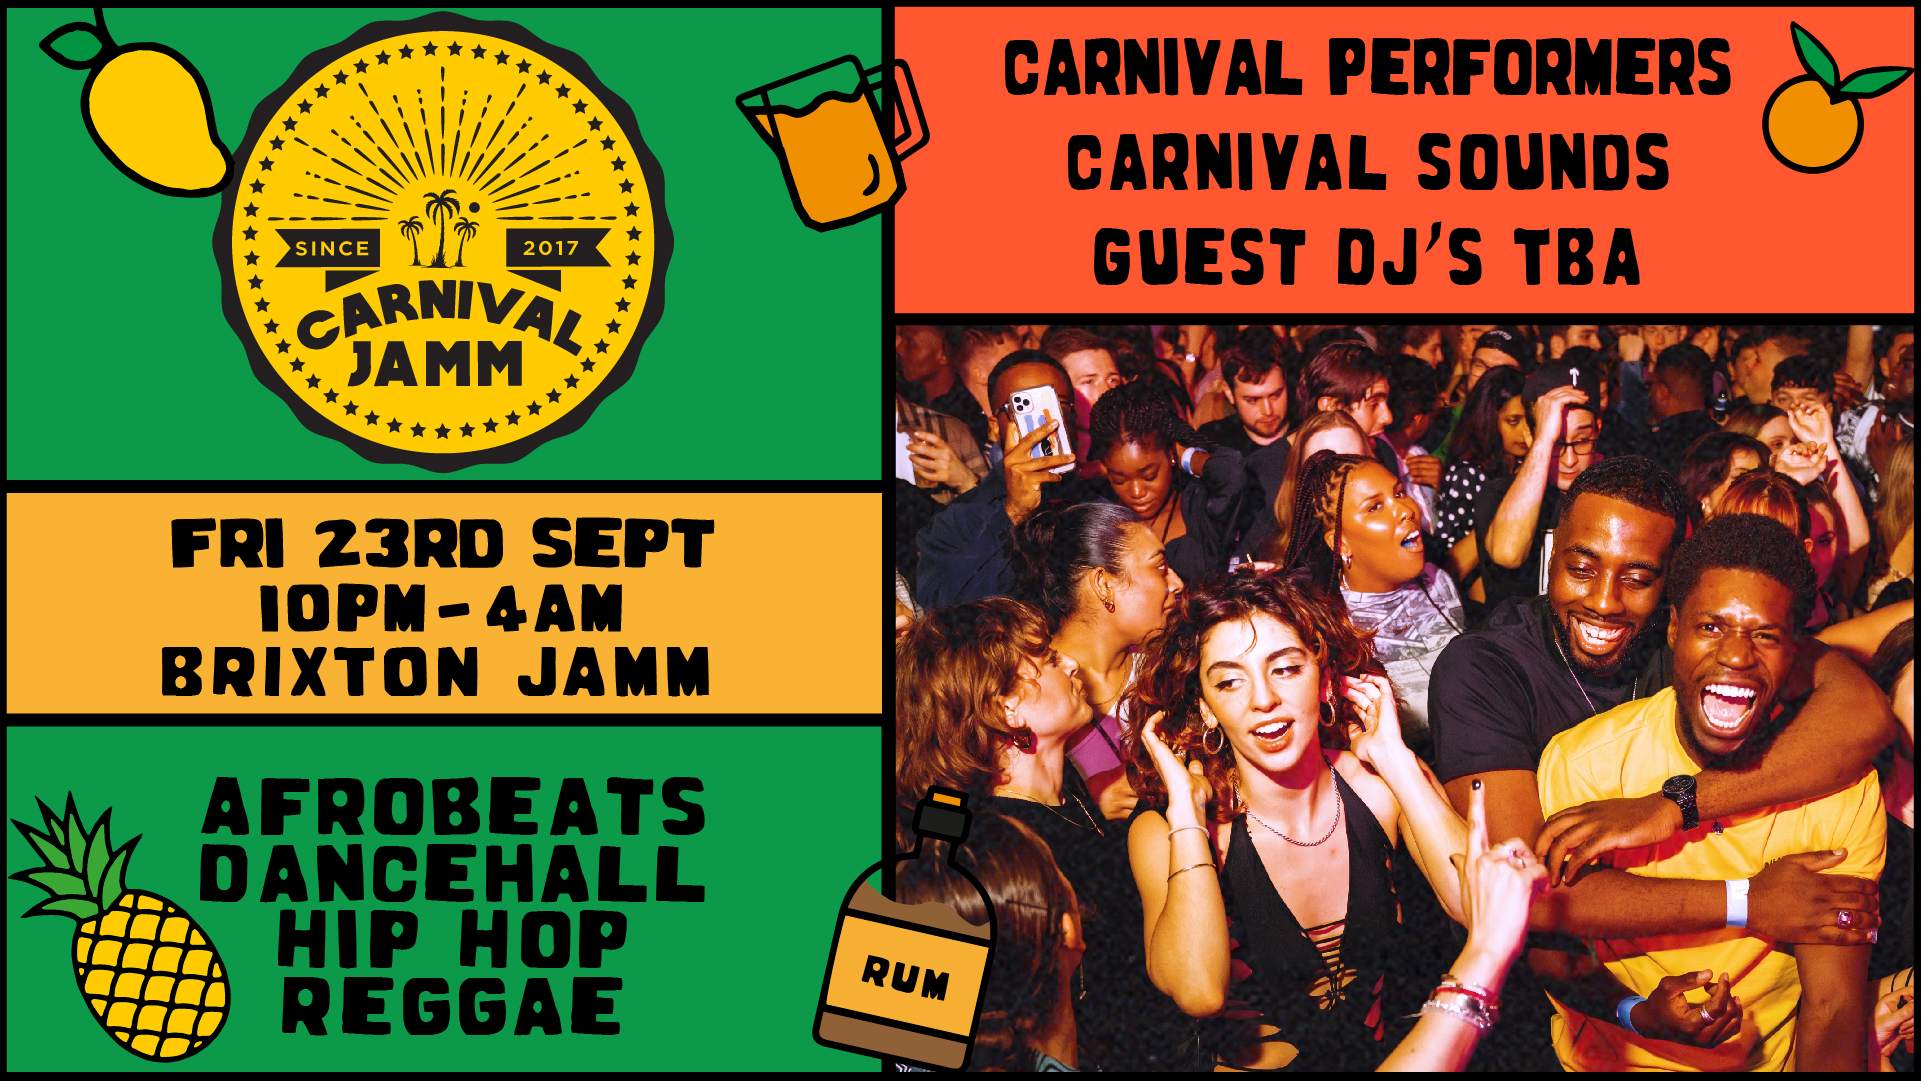 Jamm Summer Carnival: Afrobeats x Dancehall x Hip-Hop x Reggae - Flyer front